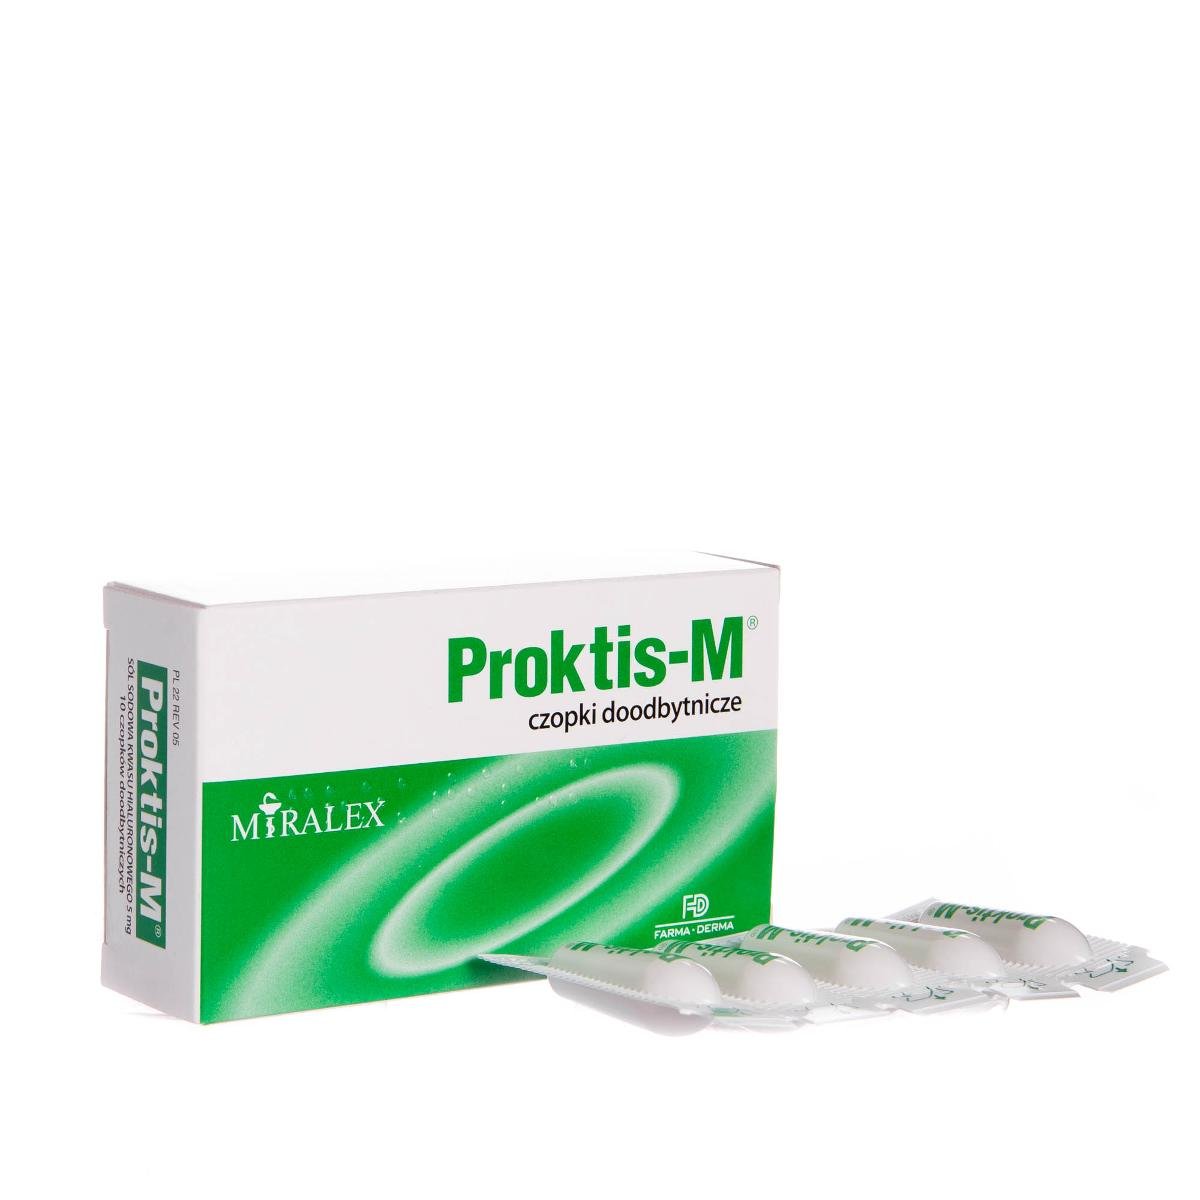 Miralex, Proktis-M, czopki doodbytnicze, 10 czopków